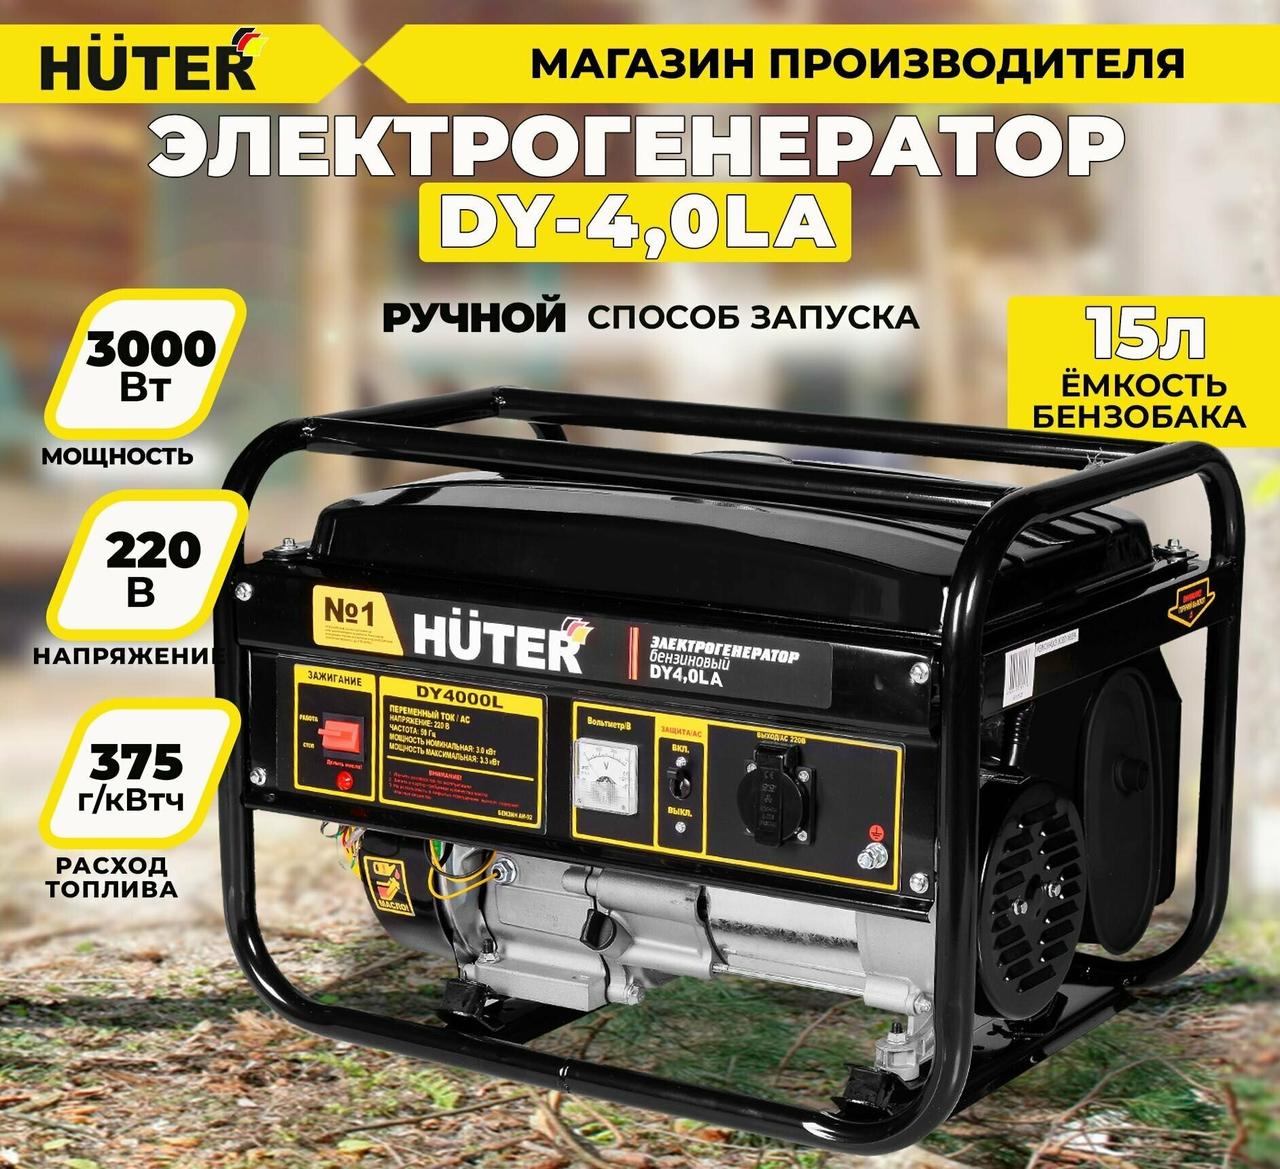 Электрогенератор Huter DY4,0LA 64/1/74 (3.0 кВт, 220 В, ручной, бак 15 л)